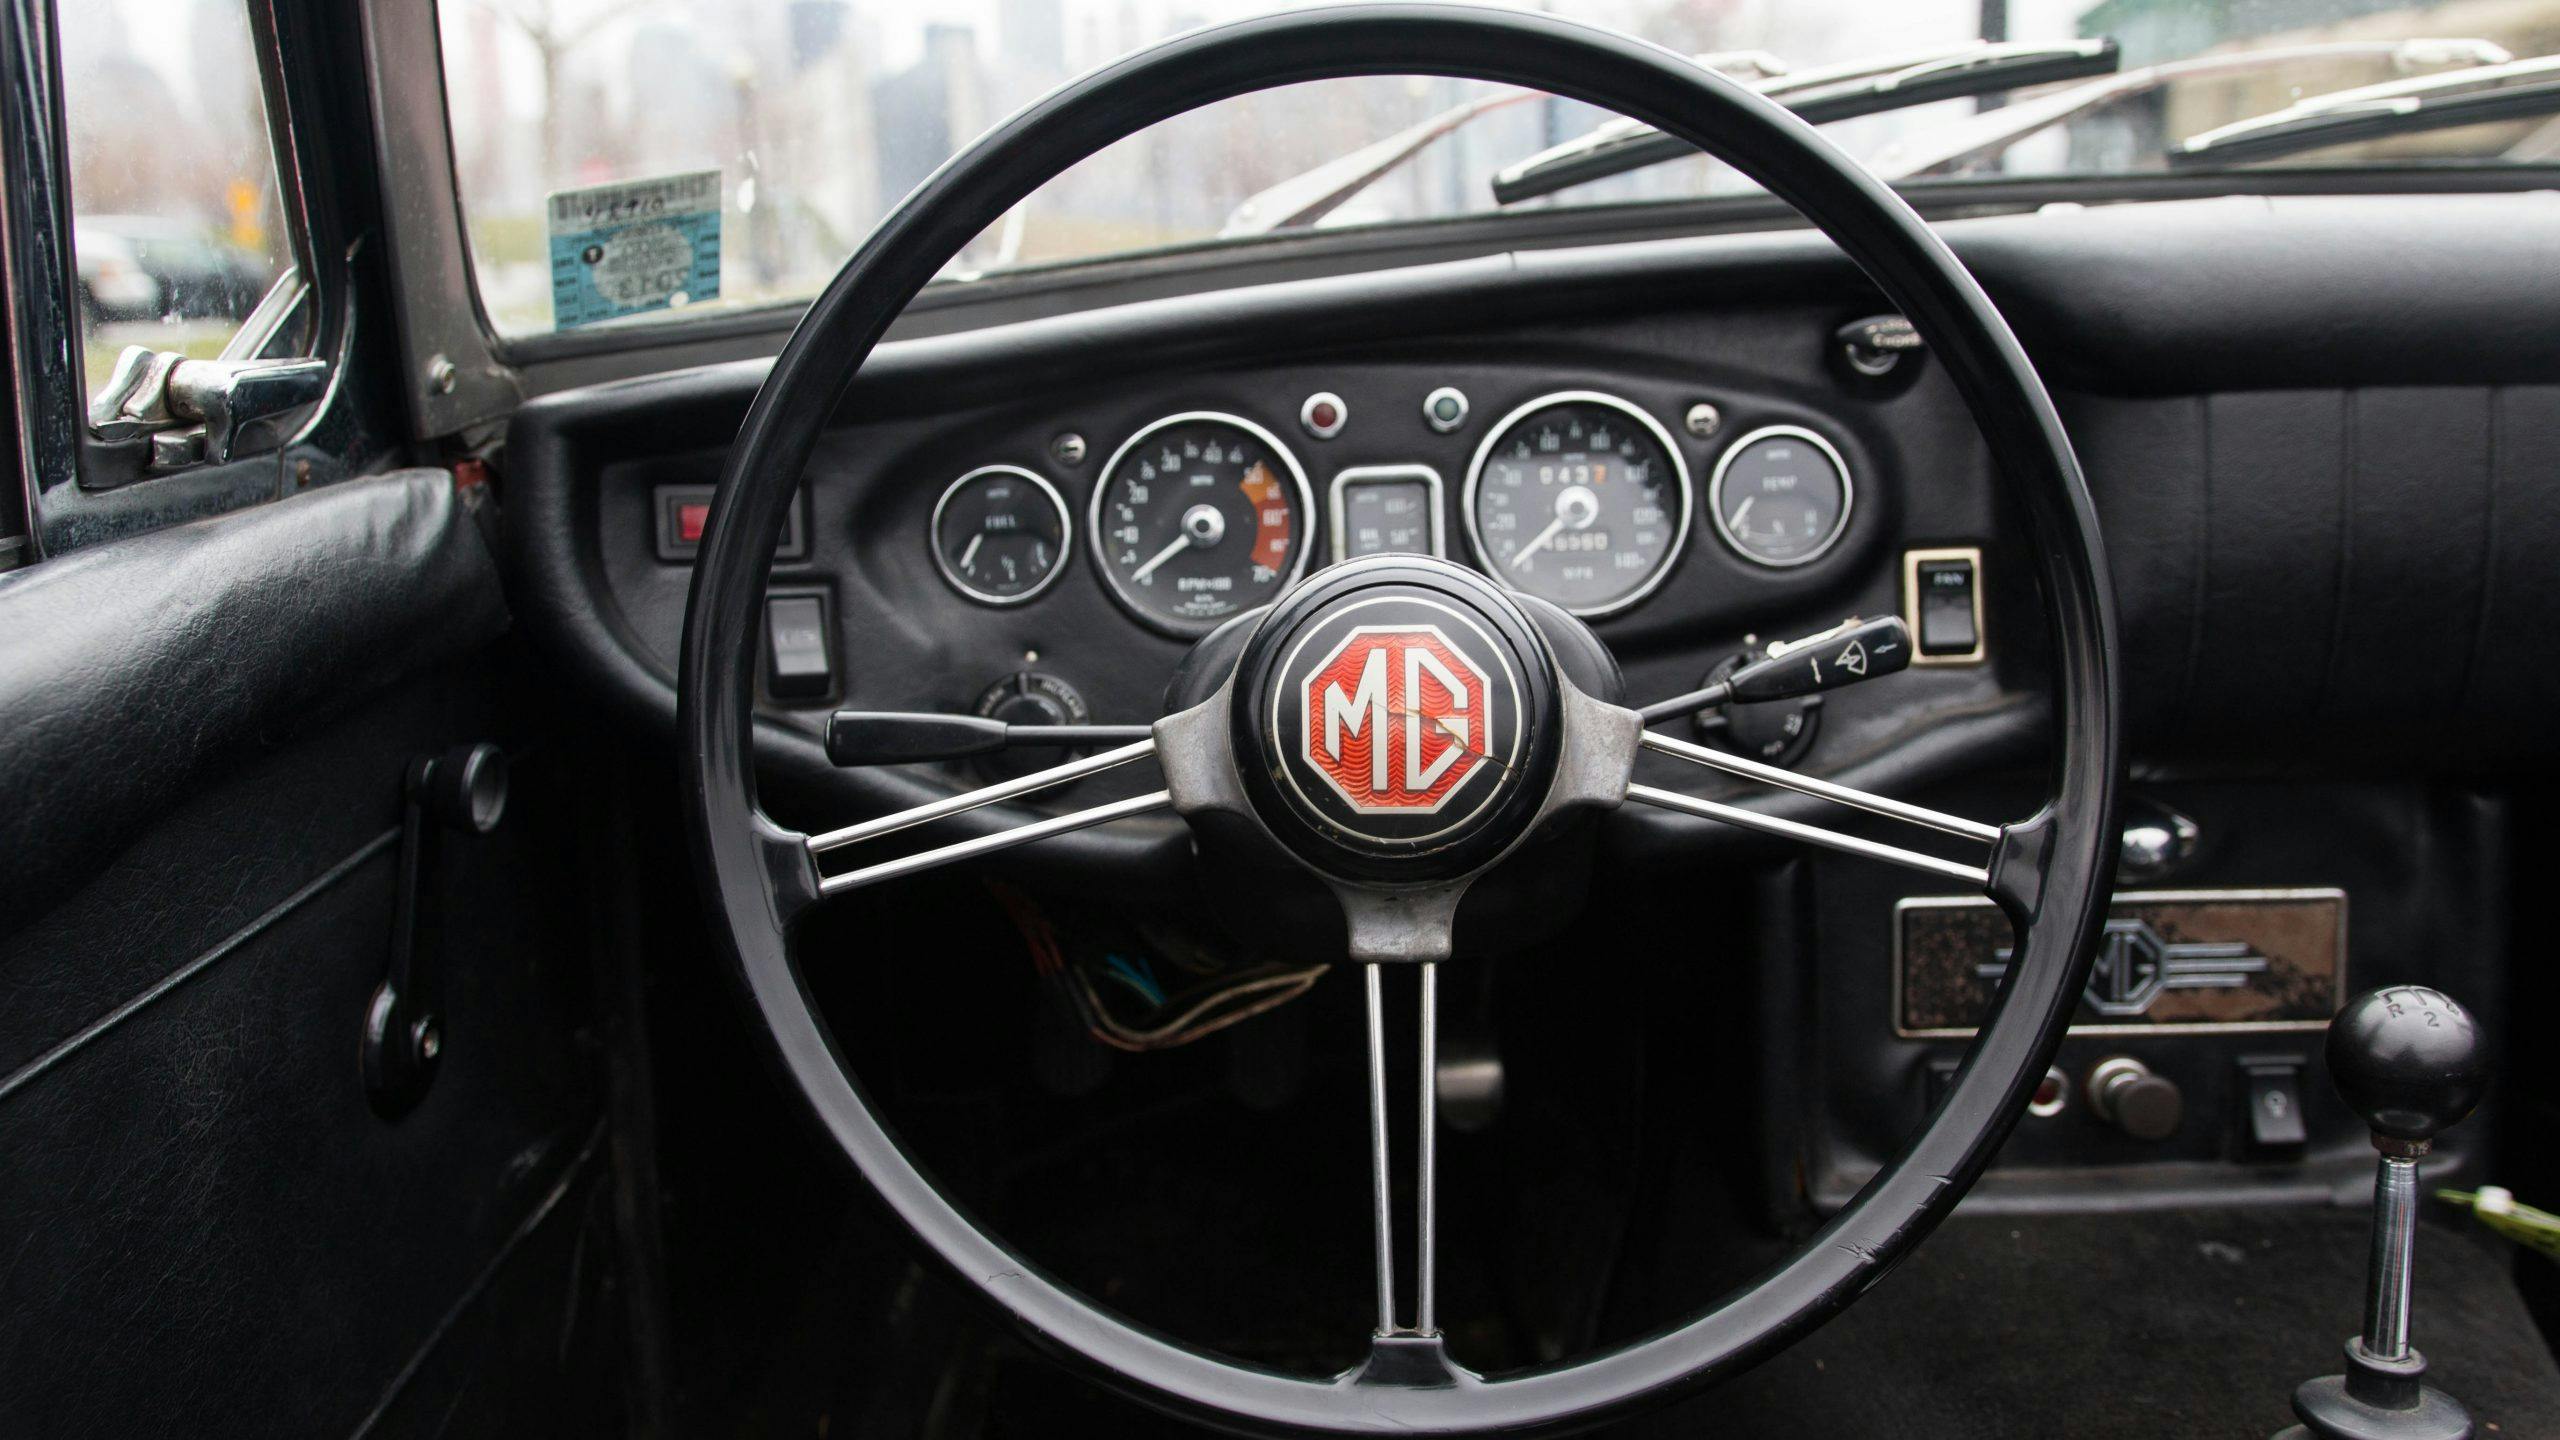 1969 MG MGC interior steering wheel detail